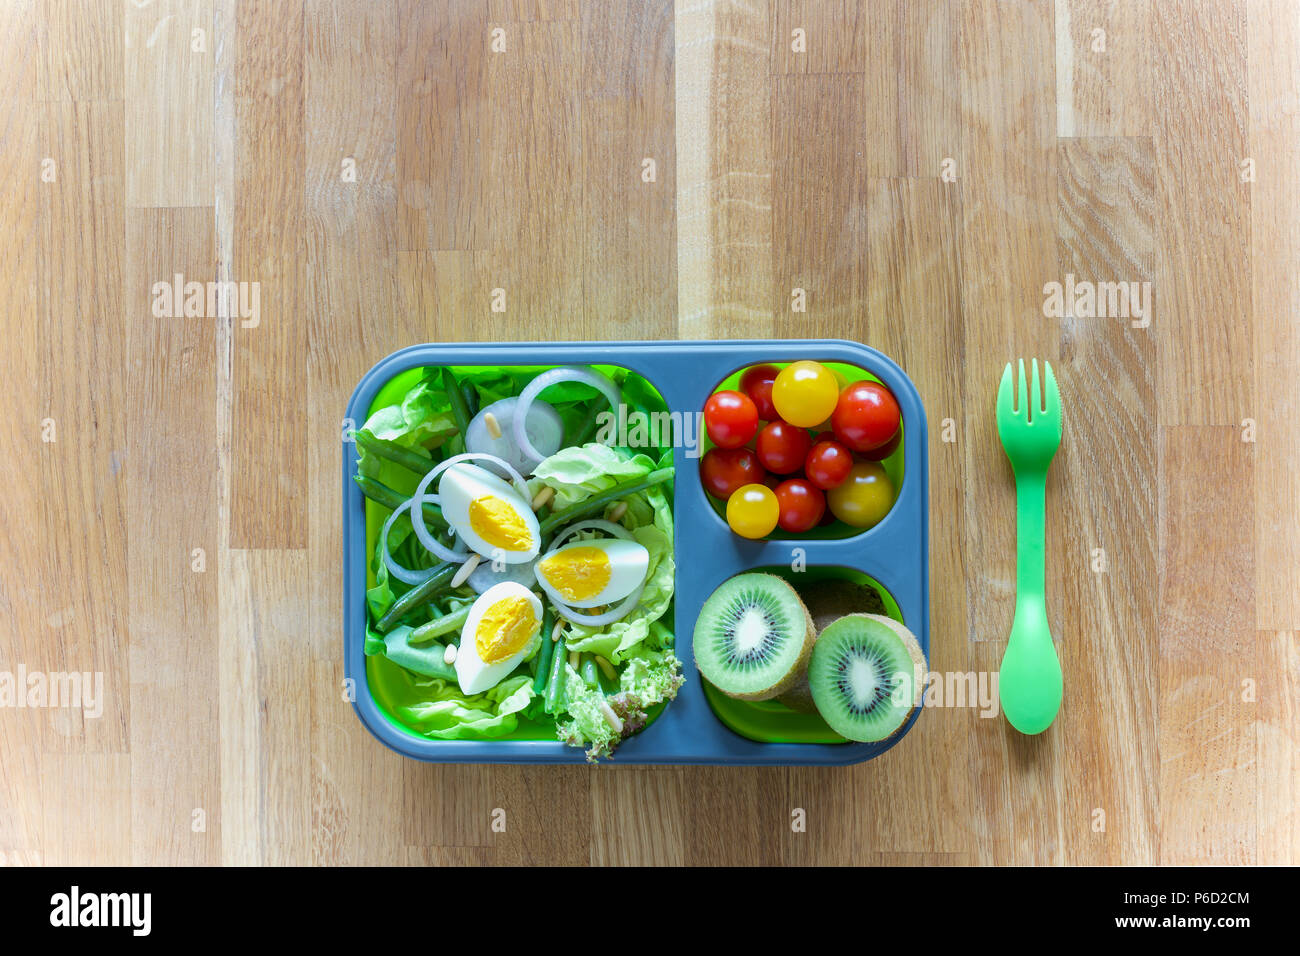 Silicone pliable boîte à lunch avec des aliments (salades vertes, des oeufs, des tomates, kiwi) on wooden table Banque D'Images